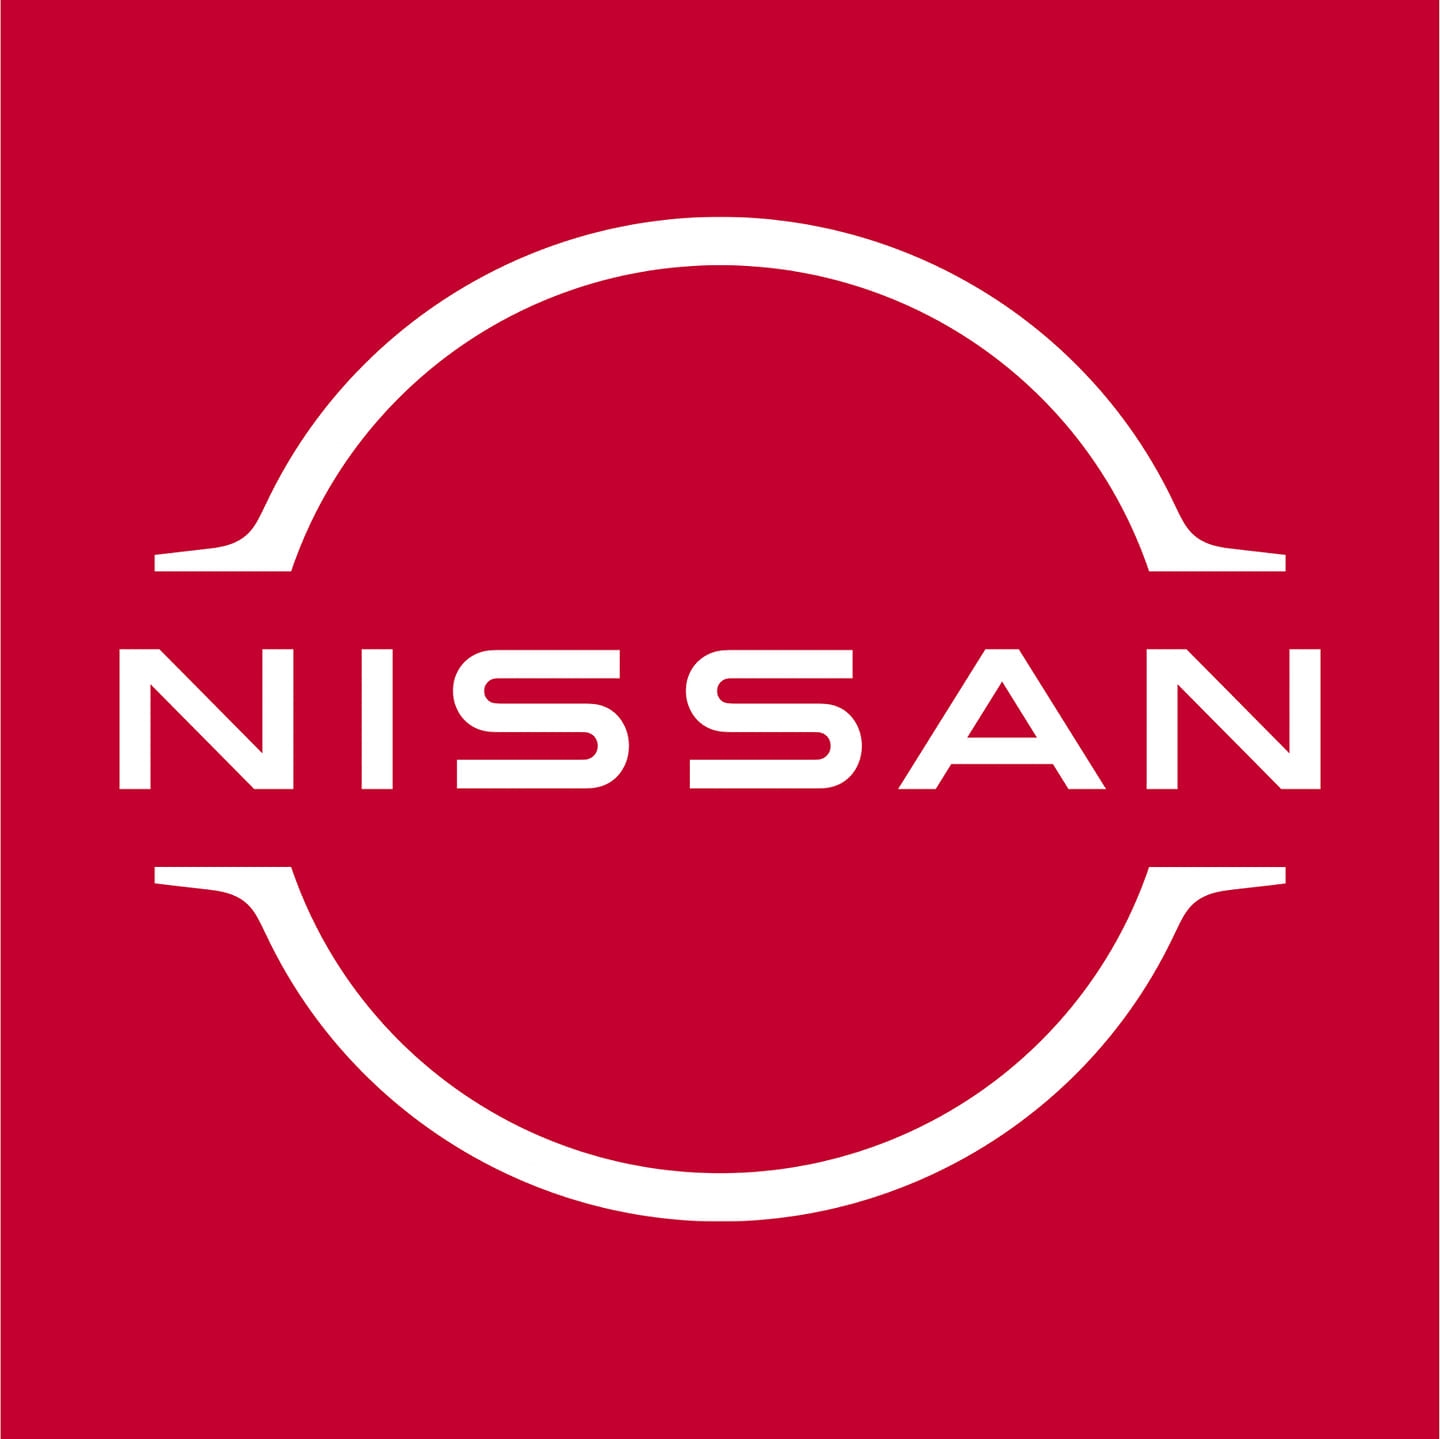 RIO NISSAN - Logo